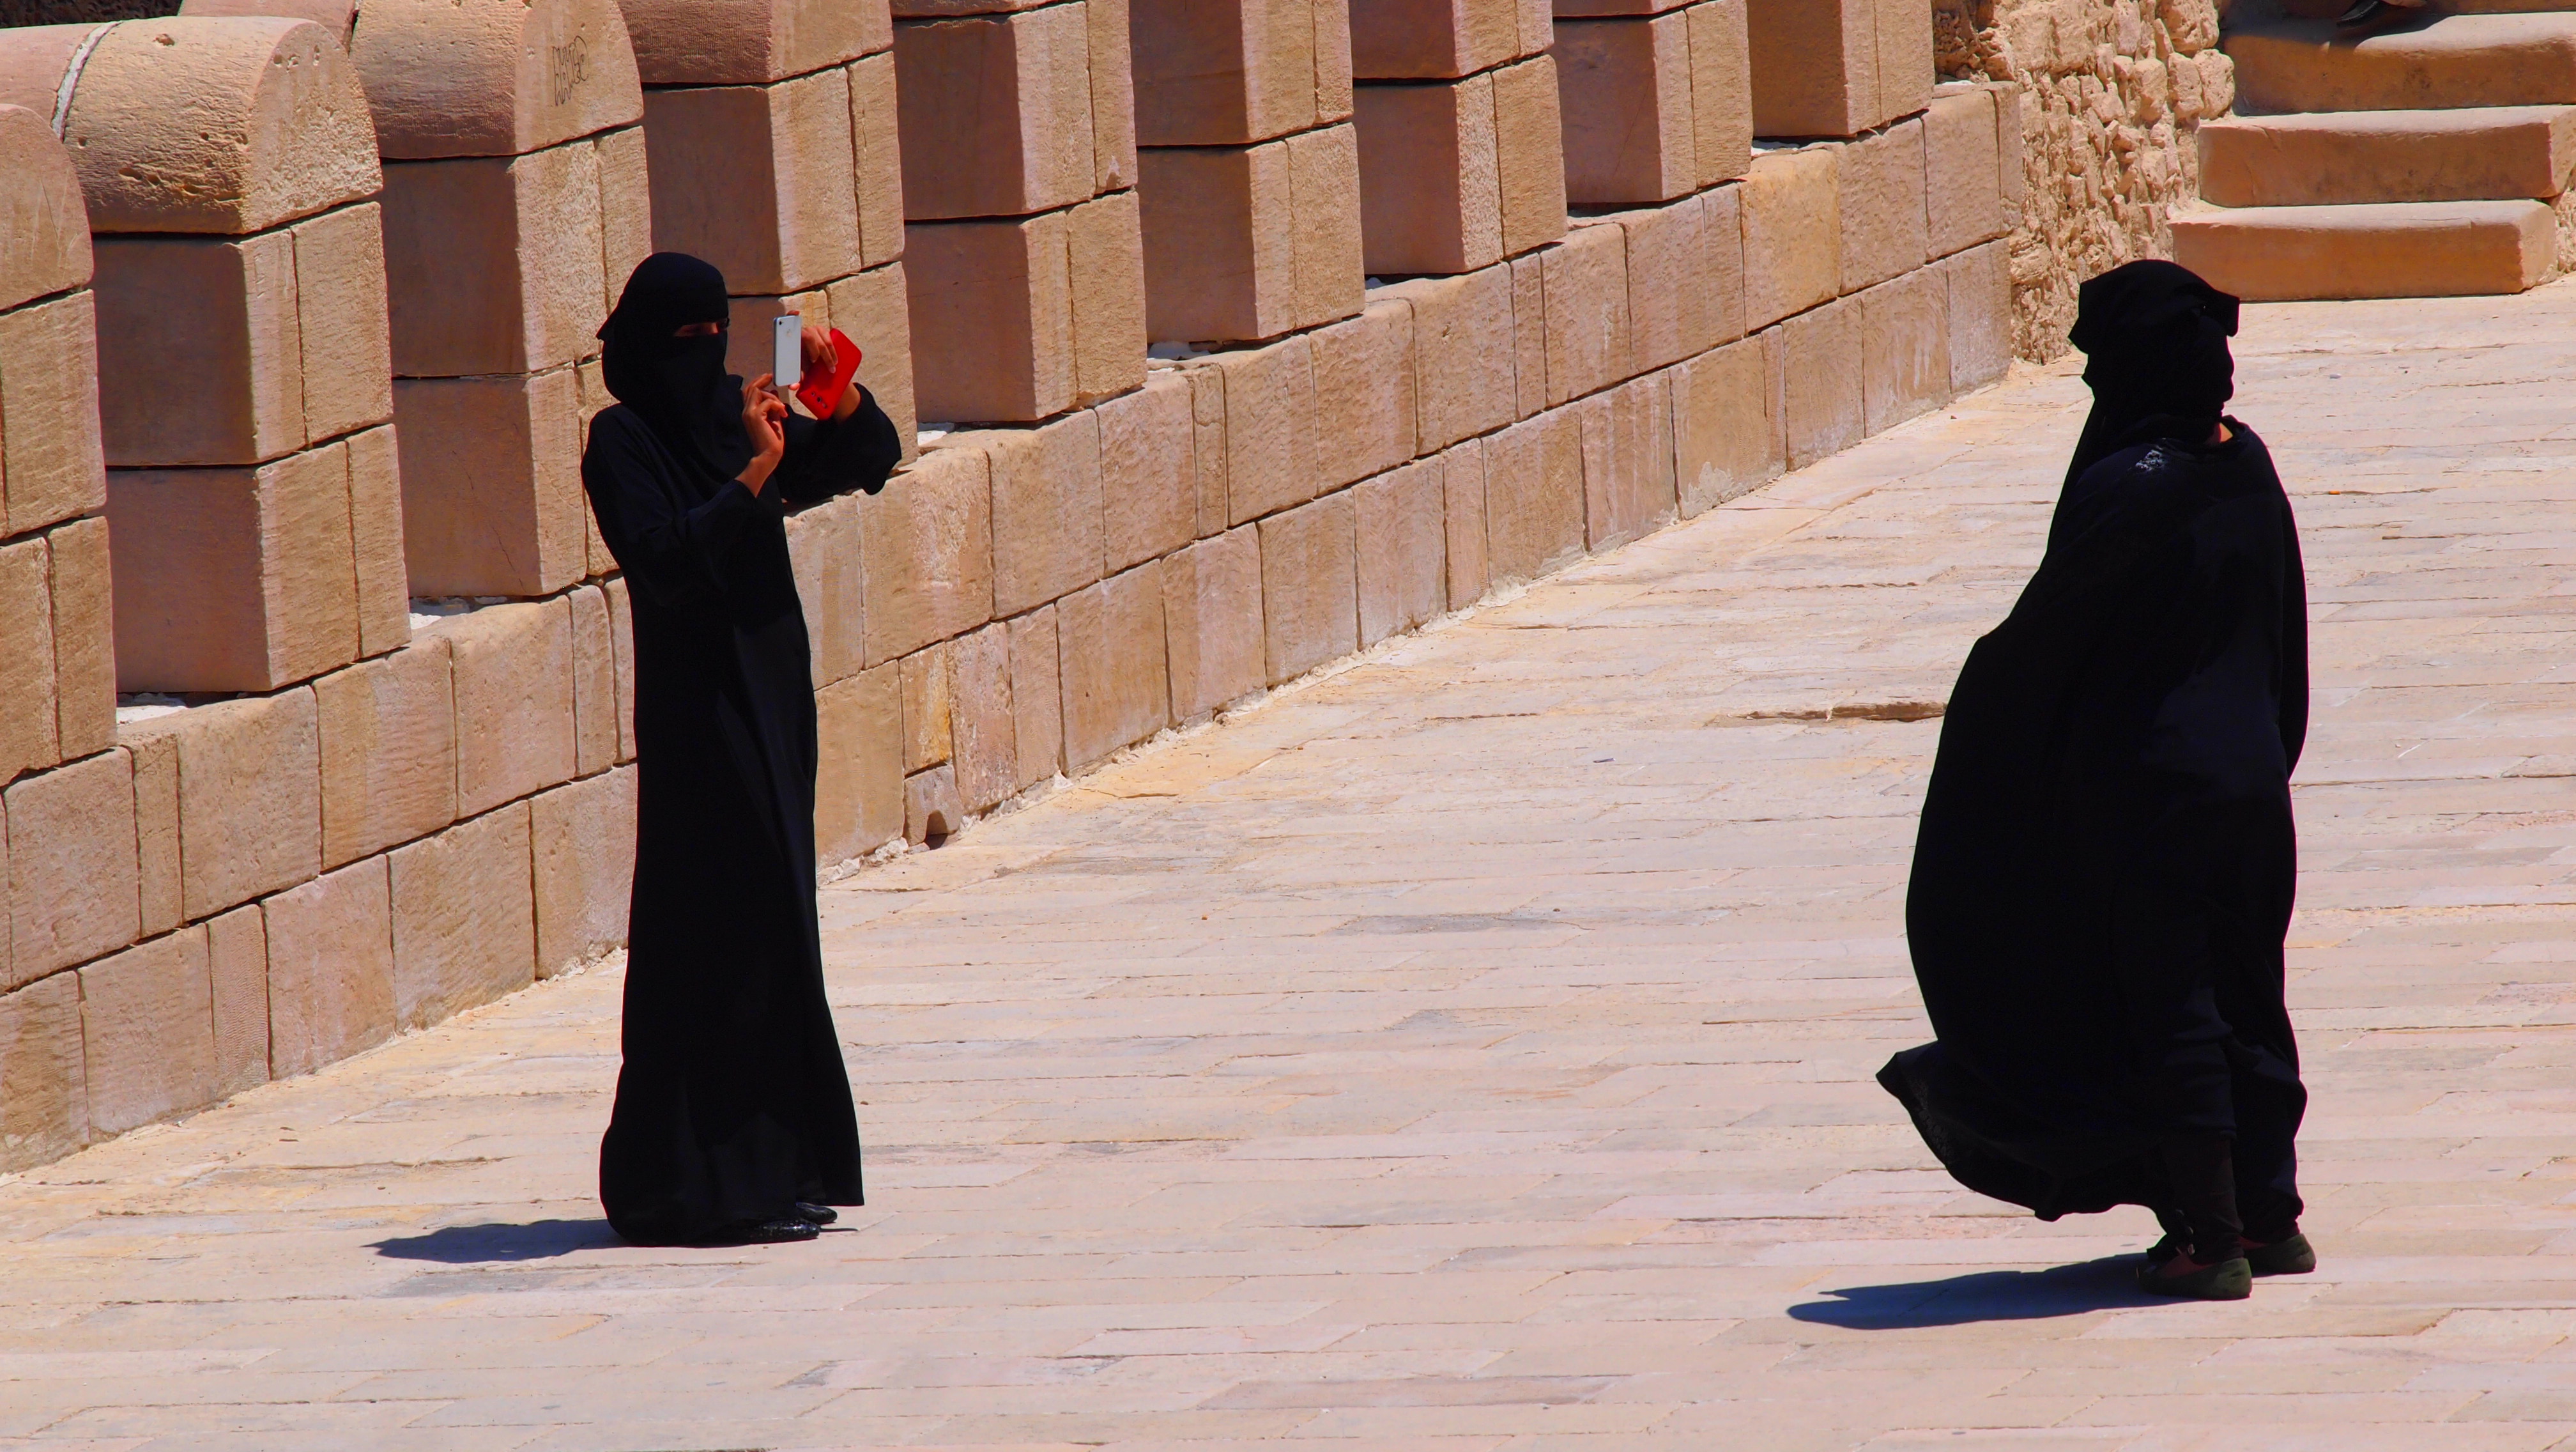 이슬람국가에서 쉽게 볼 수 있는 검은 히잡을 두른 여성들. 뽐내고 싶은 그들의 욕구는 우리와 다를 게 없다.